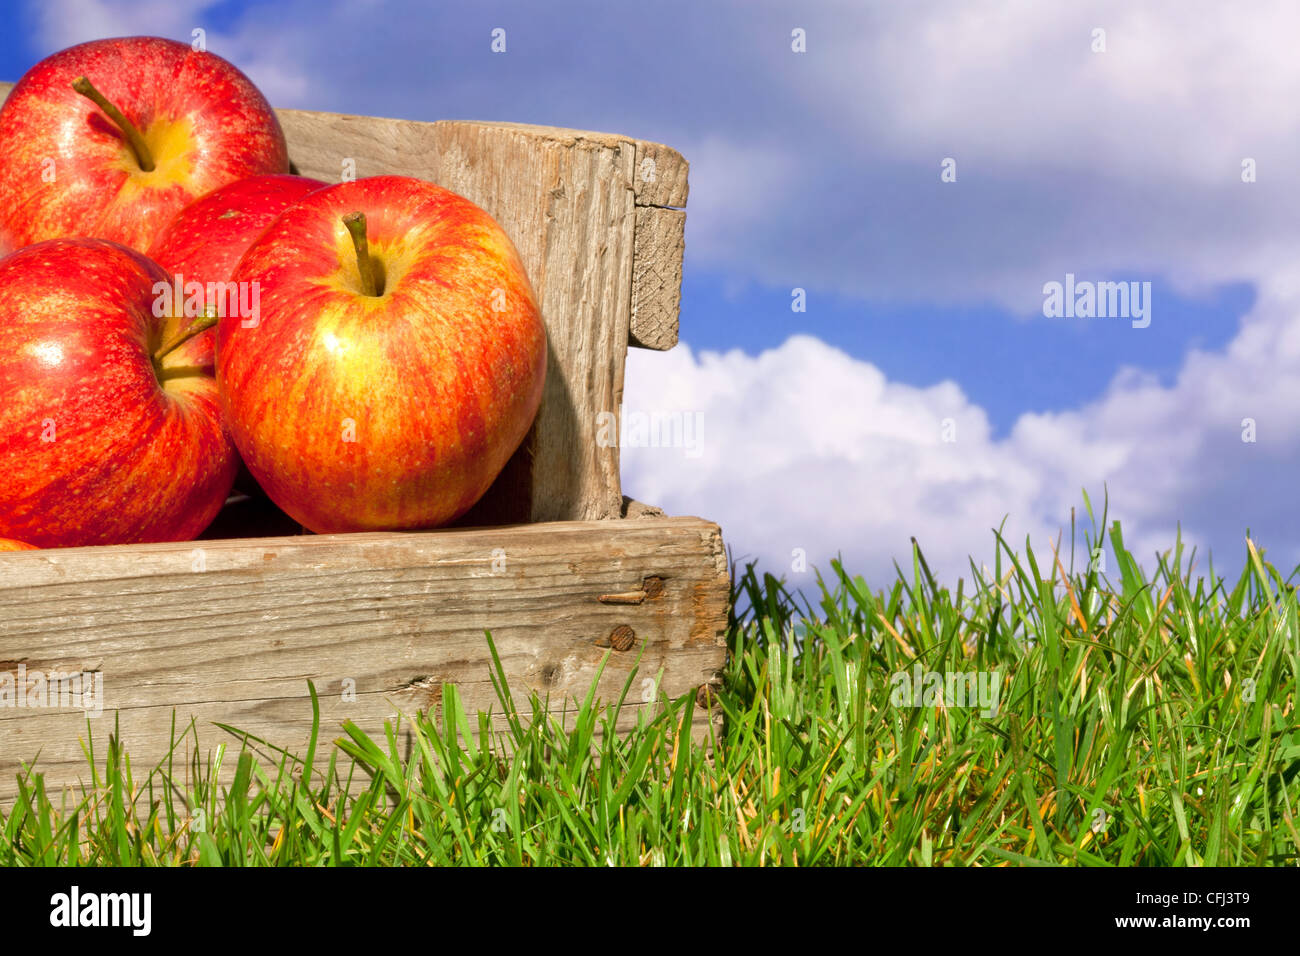 Still Life foto di appena raccolto le mele rosse in una cassa di legno sull'erba contro un blu cielo nuvoloso. Foto Stock